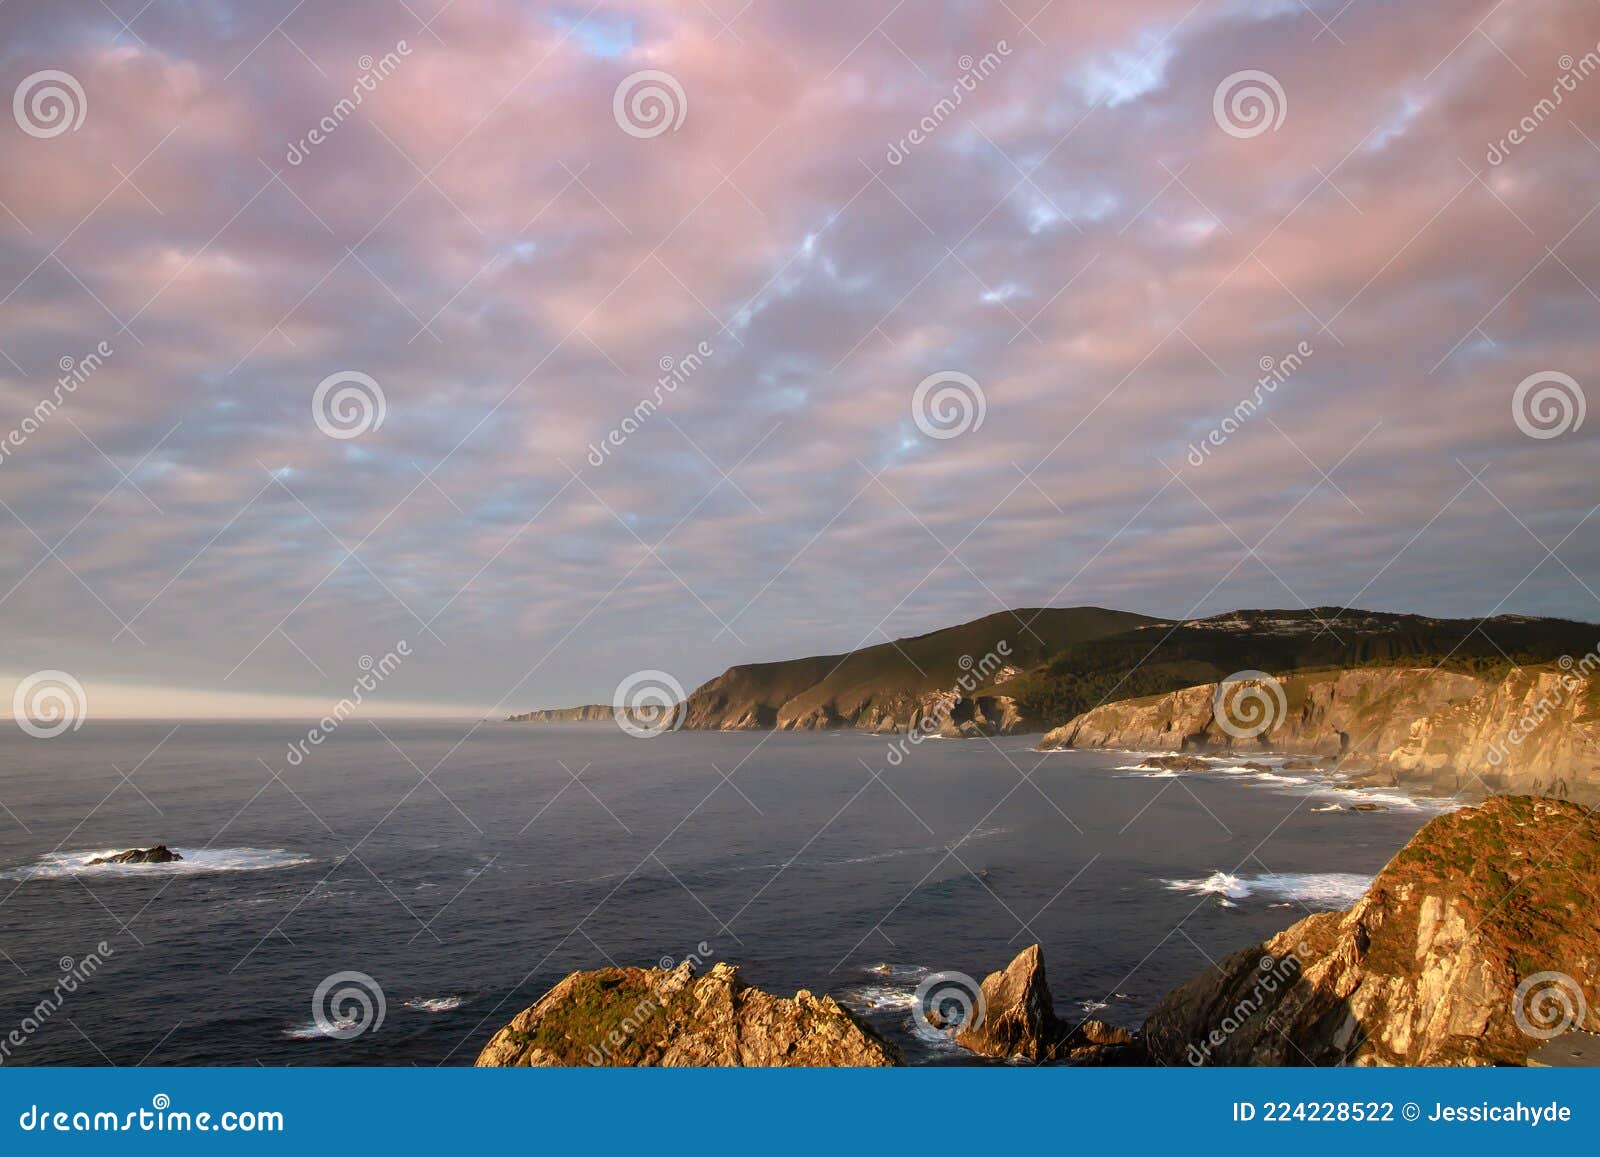 cliffs in galicia coastline